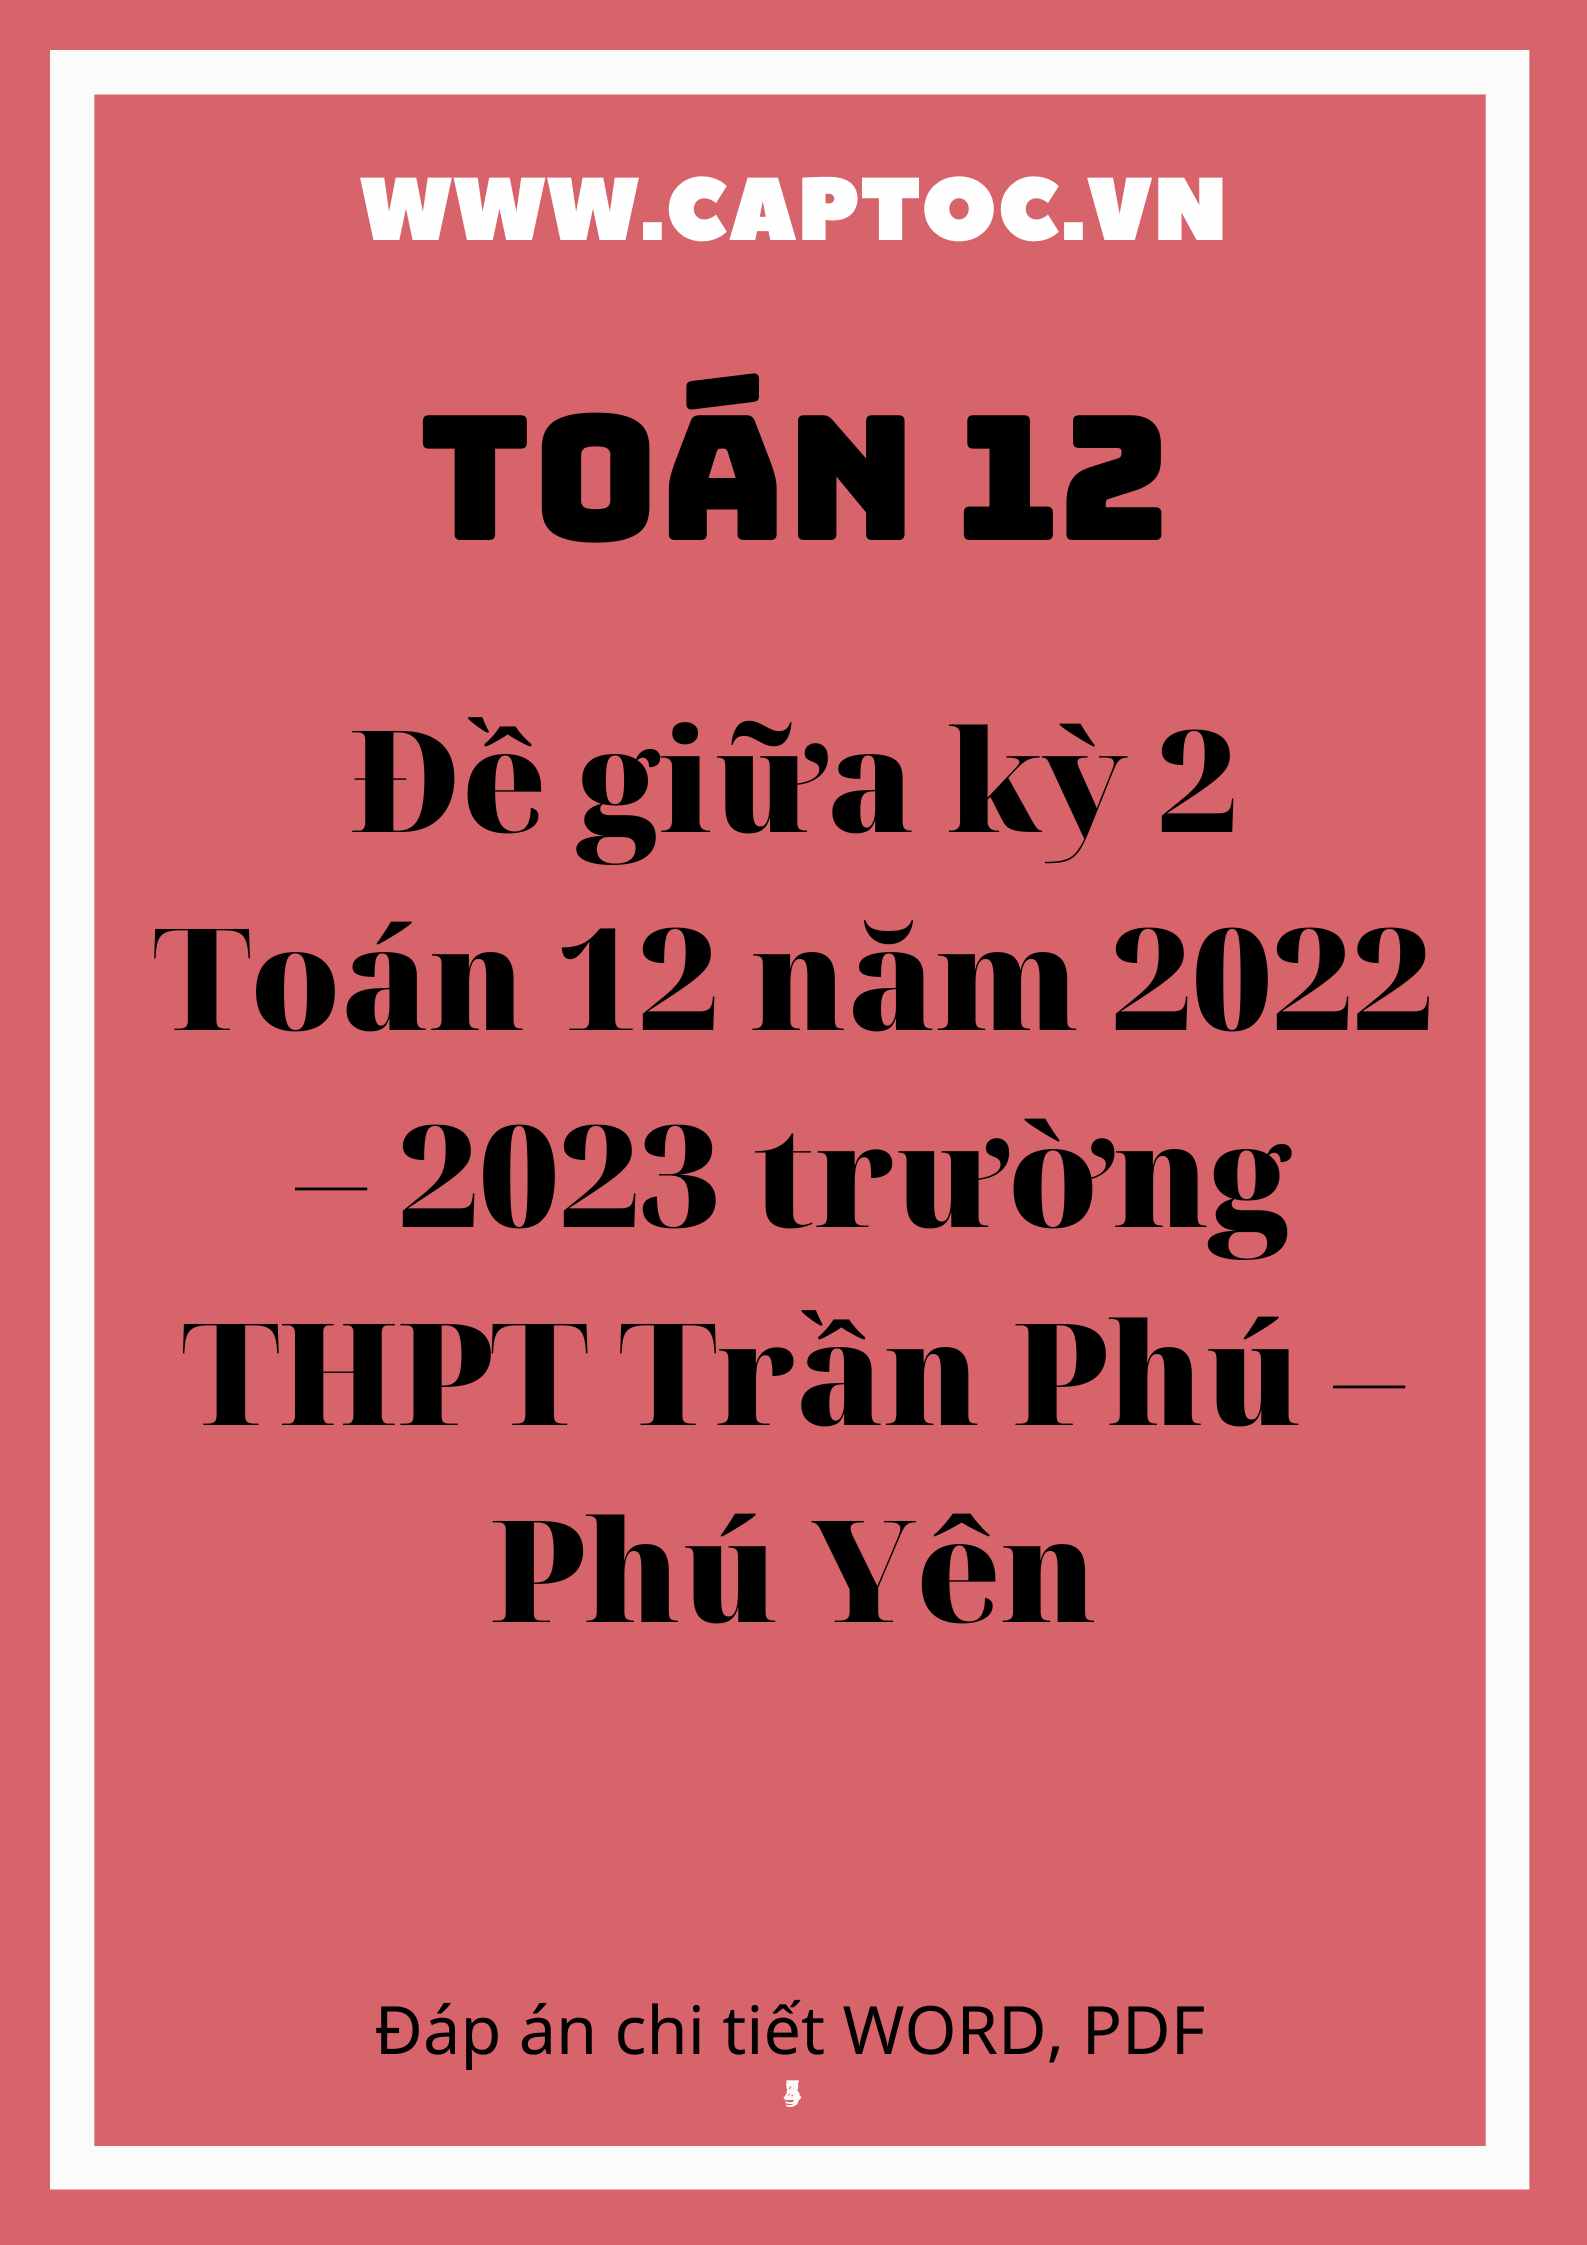 Đề giữa kỳ 2 Toán 12 năm 2022 – 2023 trường THPT Trần Phú – Phú Yên